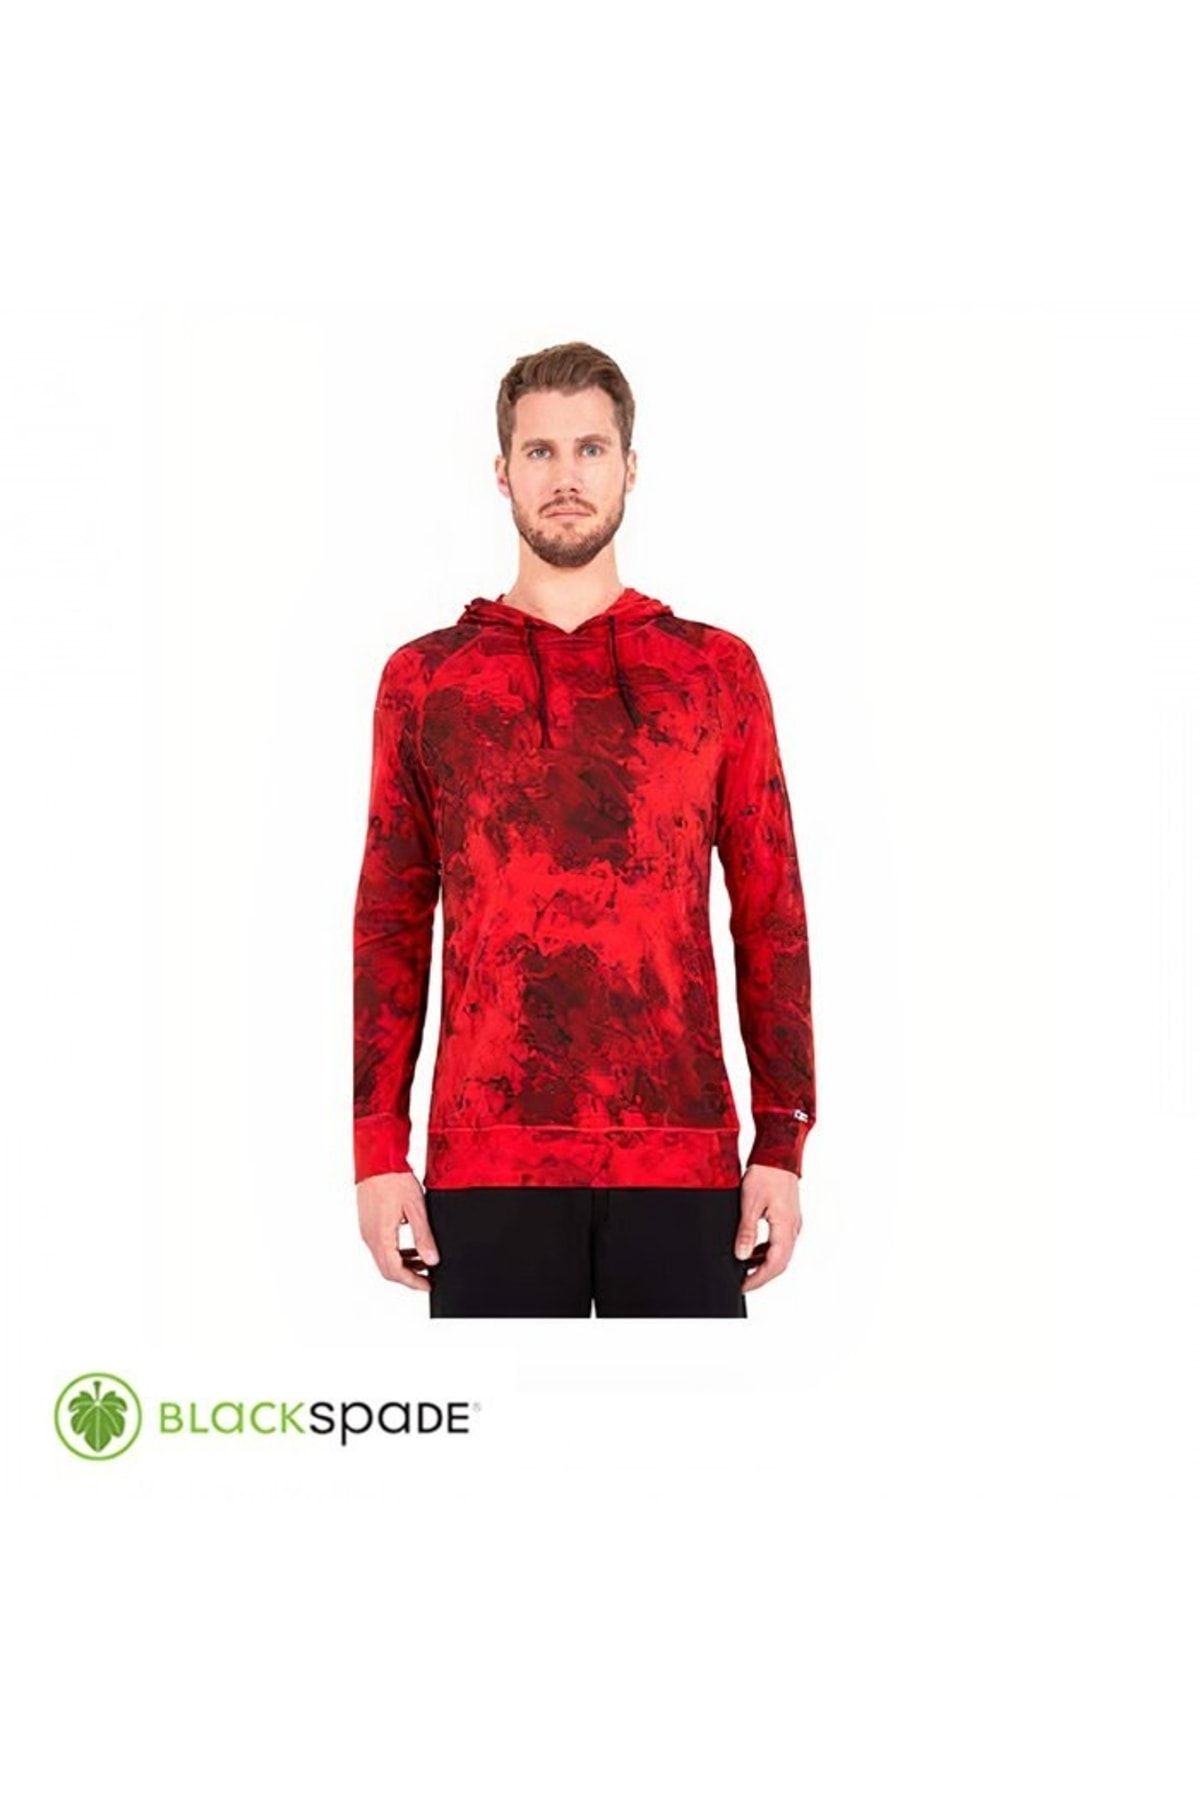 Blackspade Termal Sweatshirt 2. Seviye Kırmızıxxl